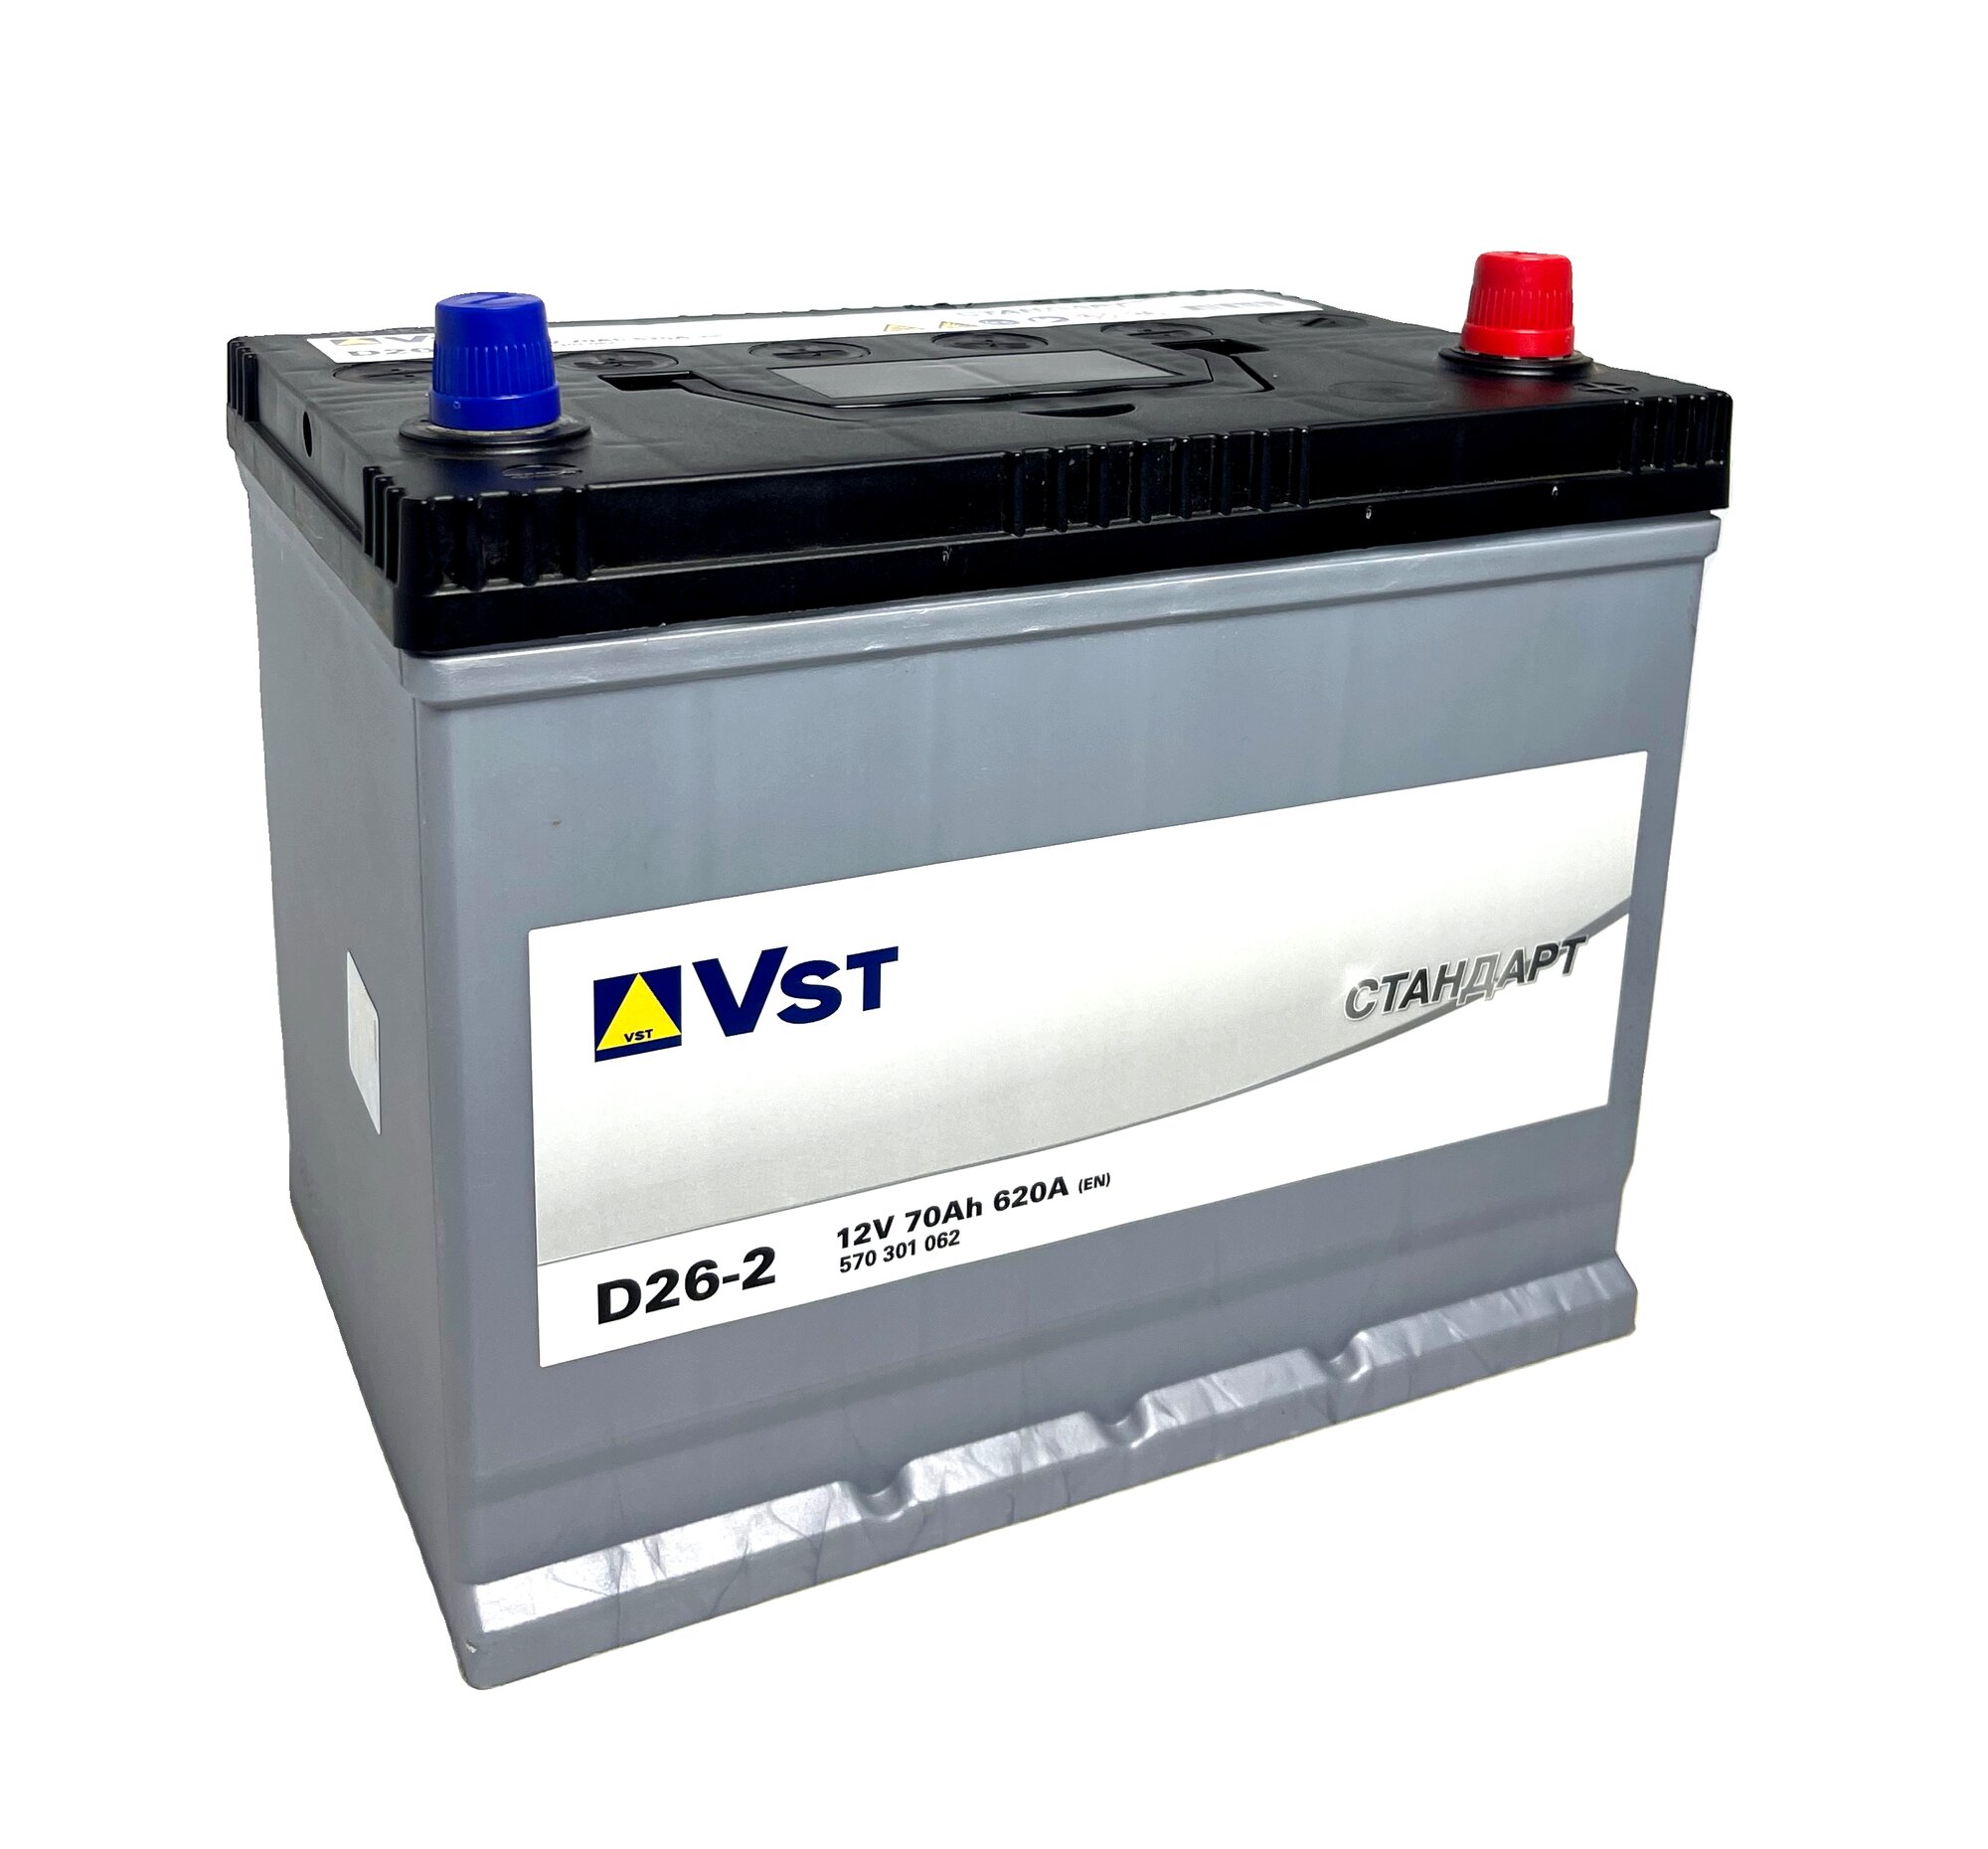 Автомобильный аккумулятор премиум класса Varta Vst Стандарт 6СТ-70.0 (570 301 062) яп. ст/бортик обратная полярность